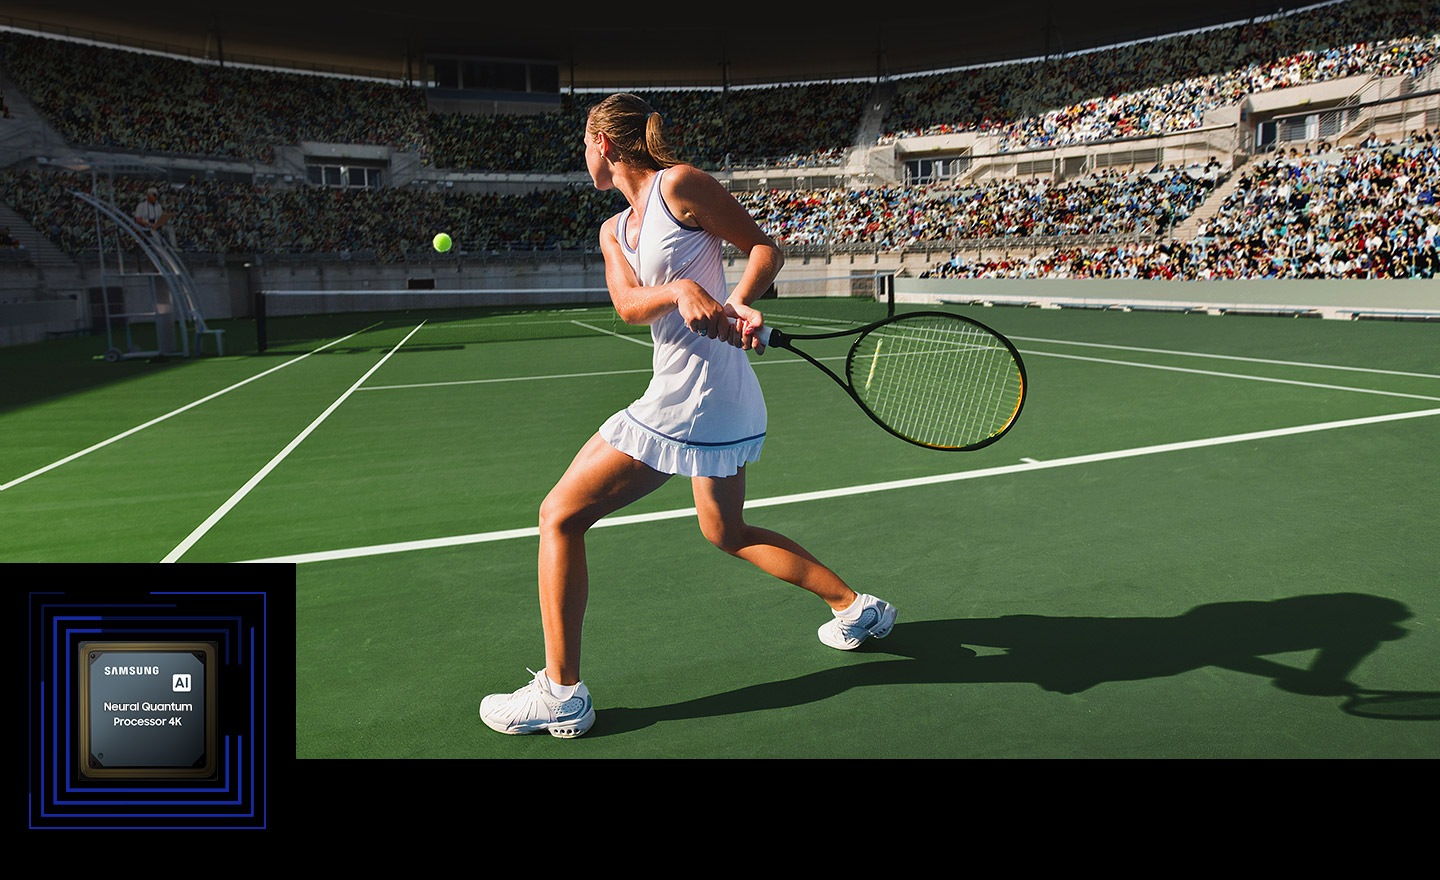 Na ekranu su istaknuti različiti elementi teniskog meča, uključujući tenisku lopticu, rubove teniskog terena, teniski reket i publiku. Pokazuje sposobnost Samsung AI Neural Quantum Processor 4K da poboljša kvalitet u realnom vremenu.